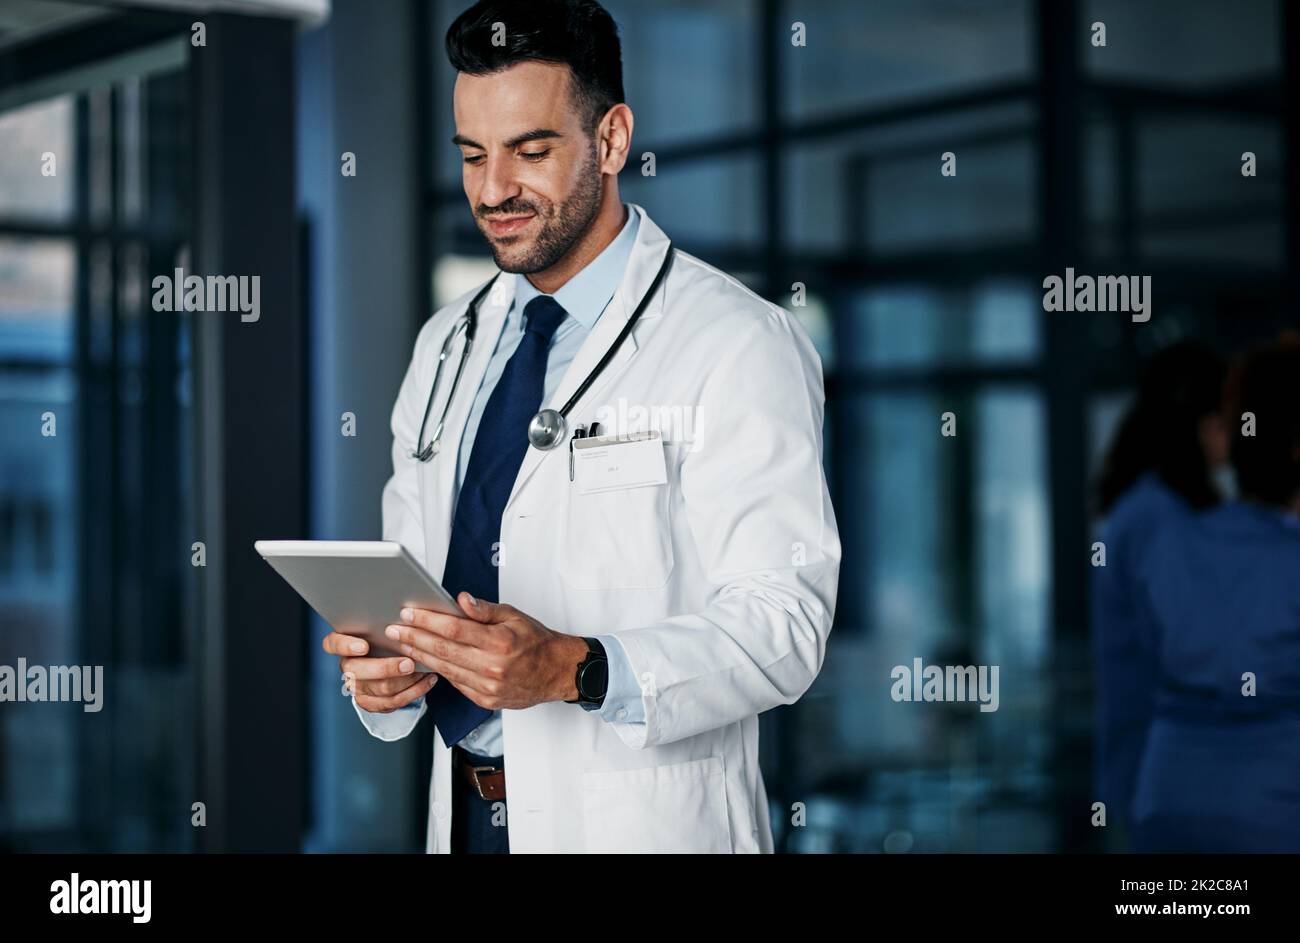 Buchen Sie eine Online-Beratung mit den medizinischen Bereichen am besten. Aufnahme eines jungen Arztes mit einem digitalen Tablet in einem Krankenhaus. Stockfoto